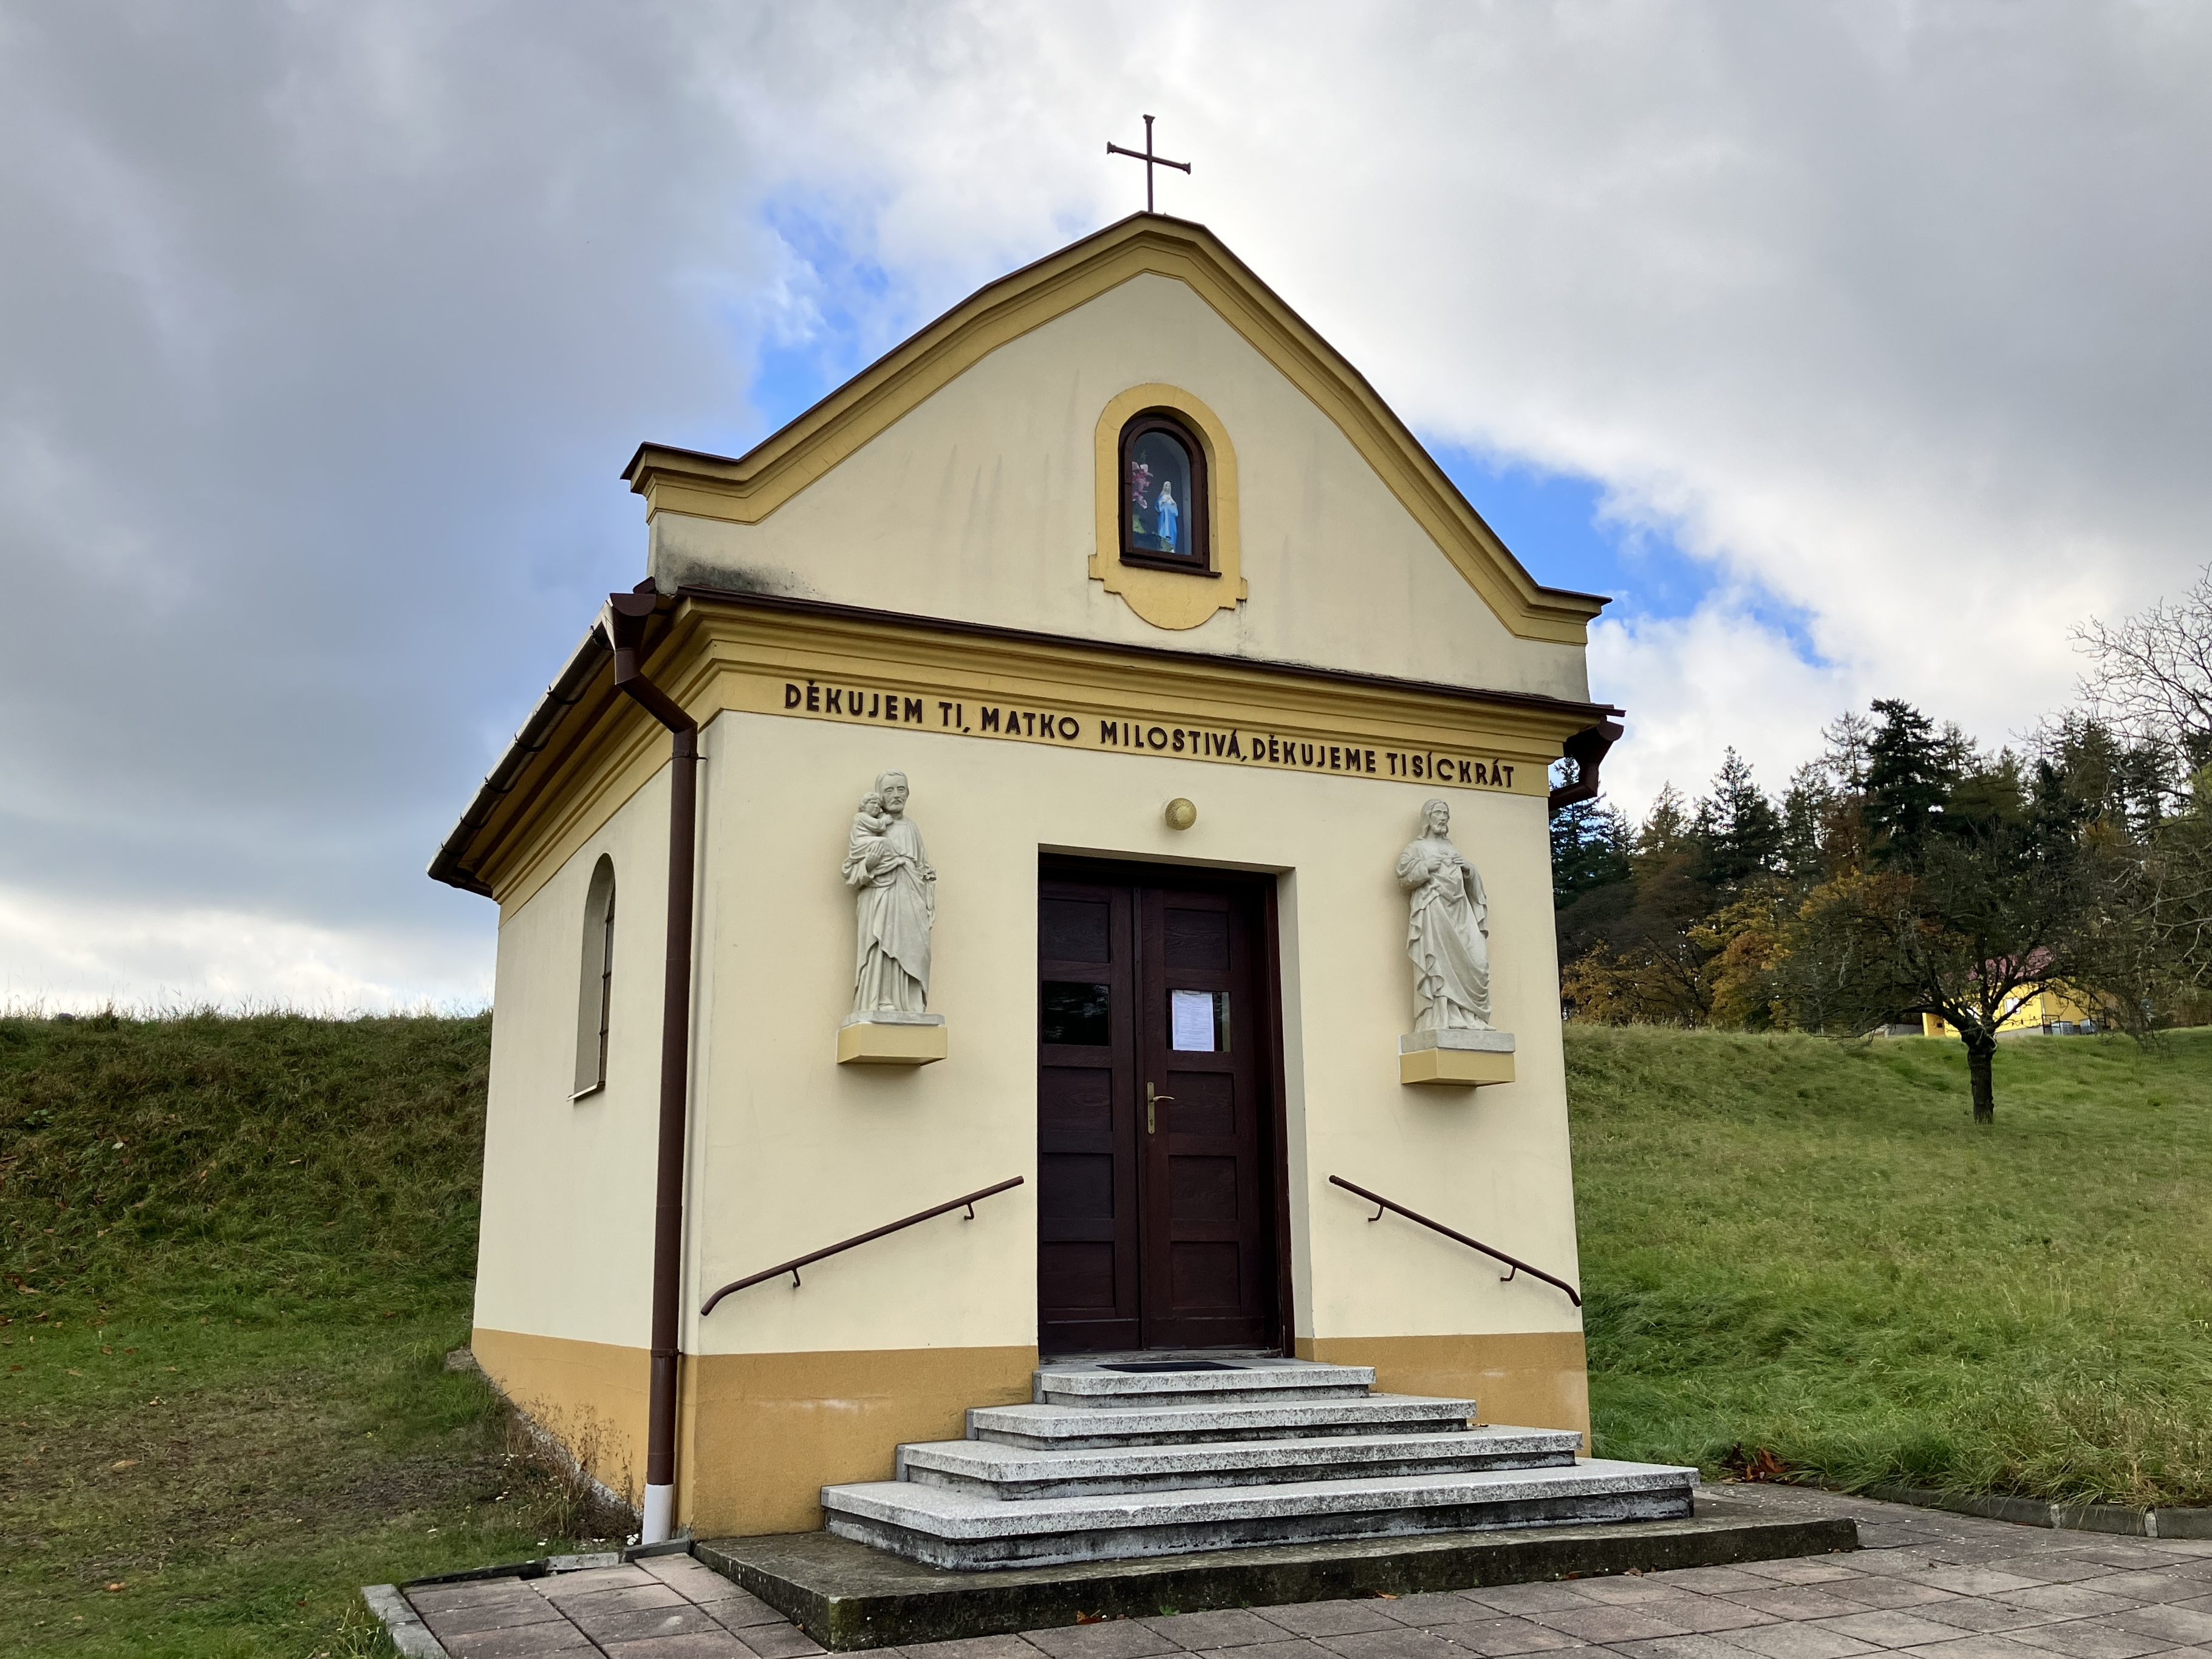 kaple Nanebevzetí Panny Marie